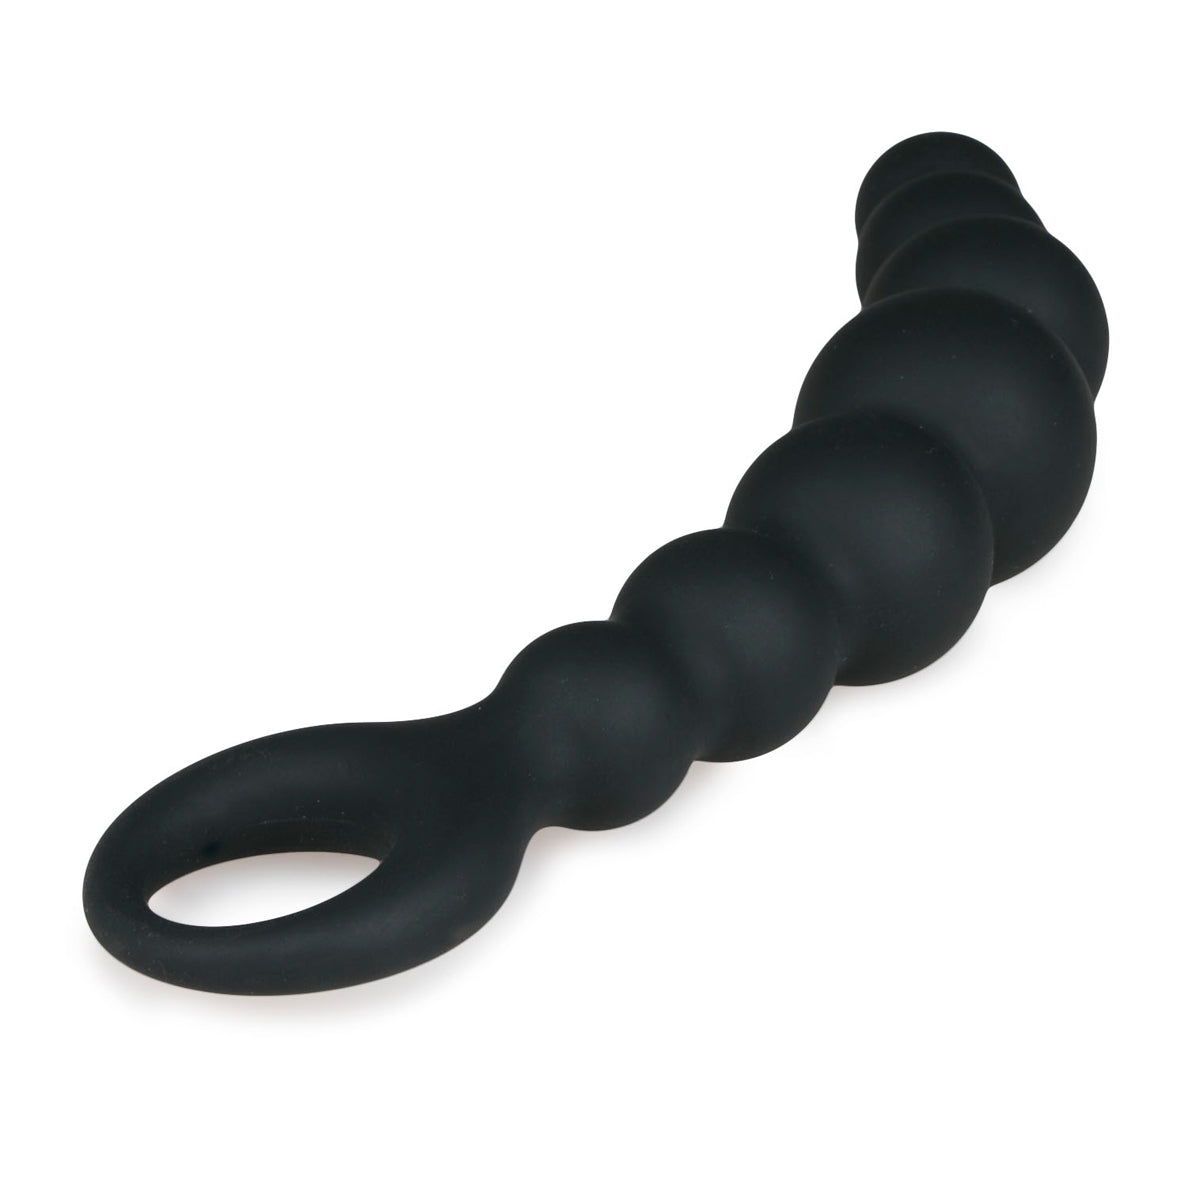 Zwarte anaal toy van het merk Easytoys. Geschikt voor de beginner. Anaal toys van Easytoys zijn verkrijgbaar bij Flavourez